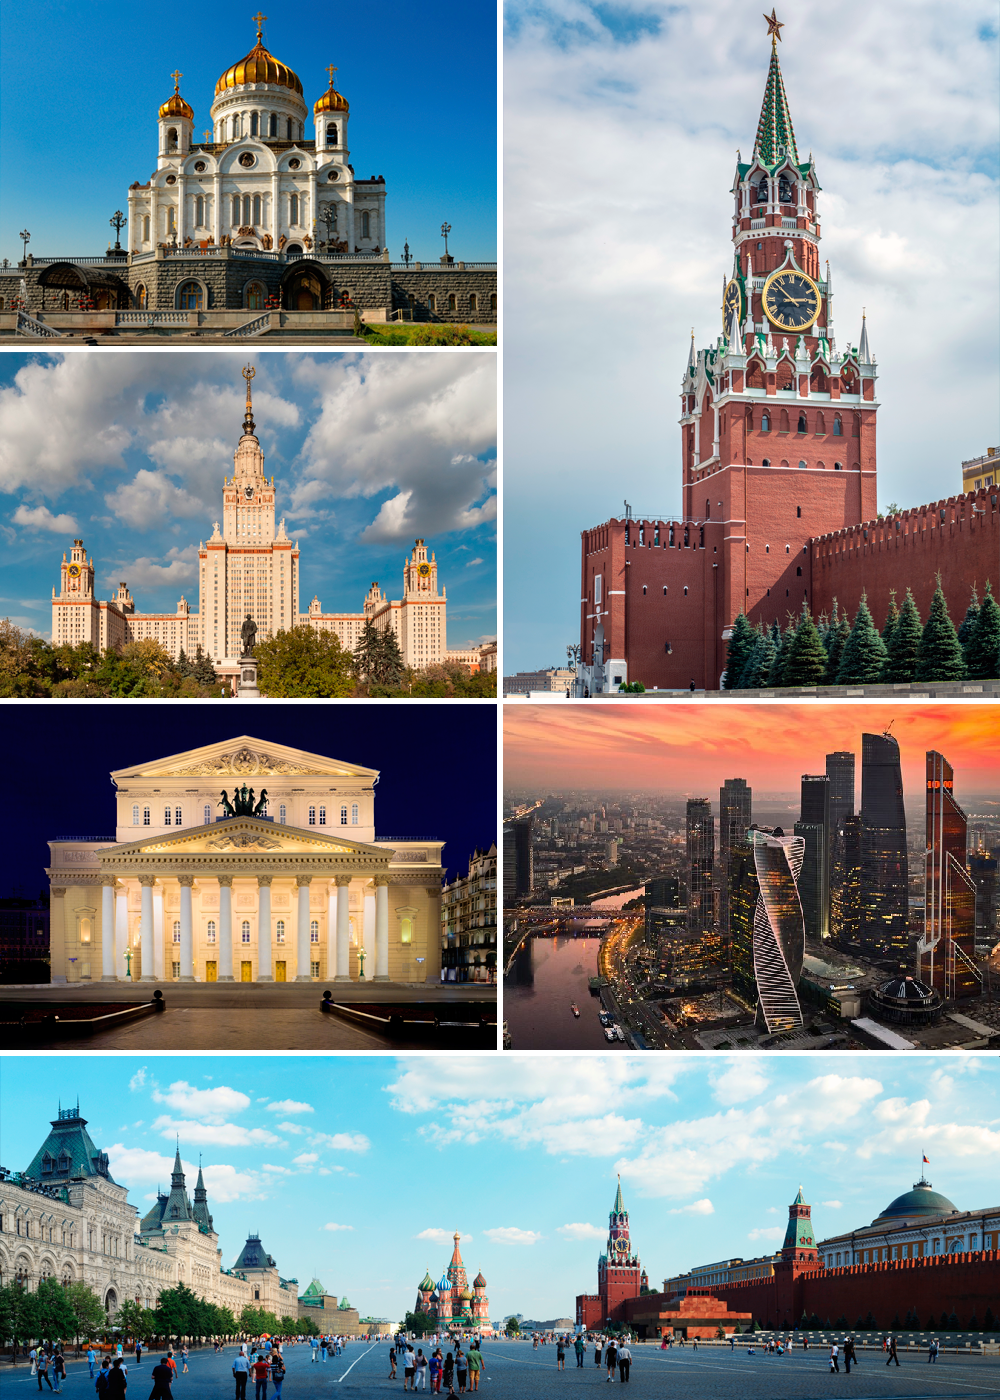 Памятники архитектуры России